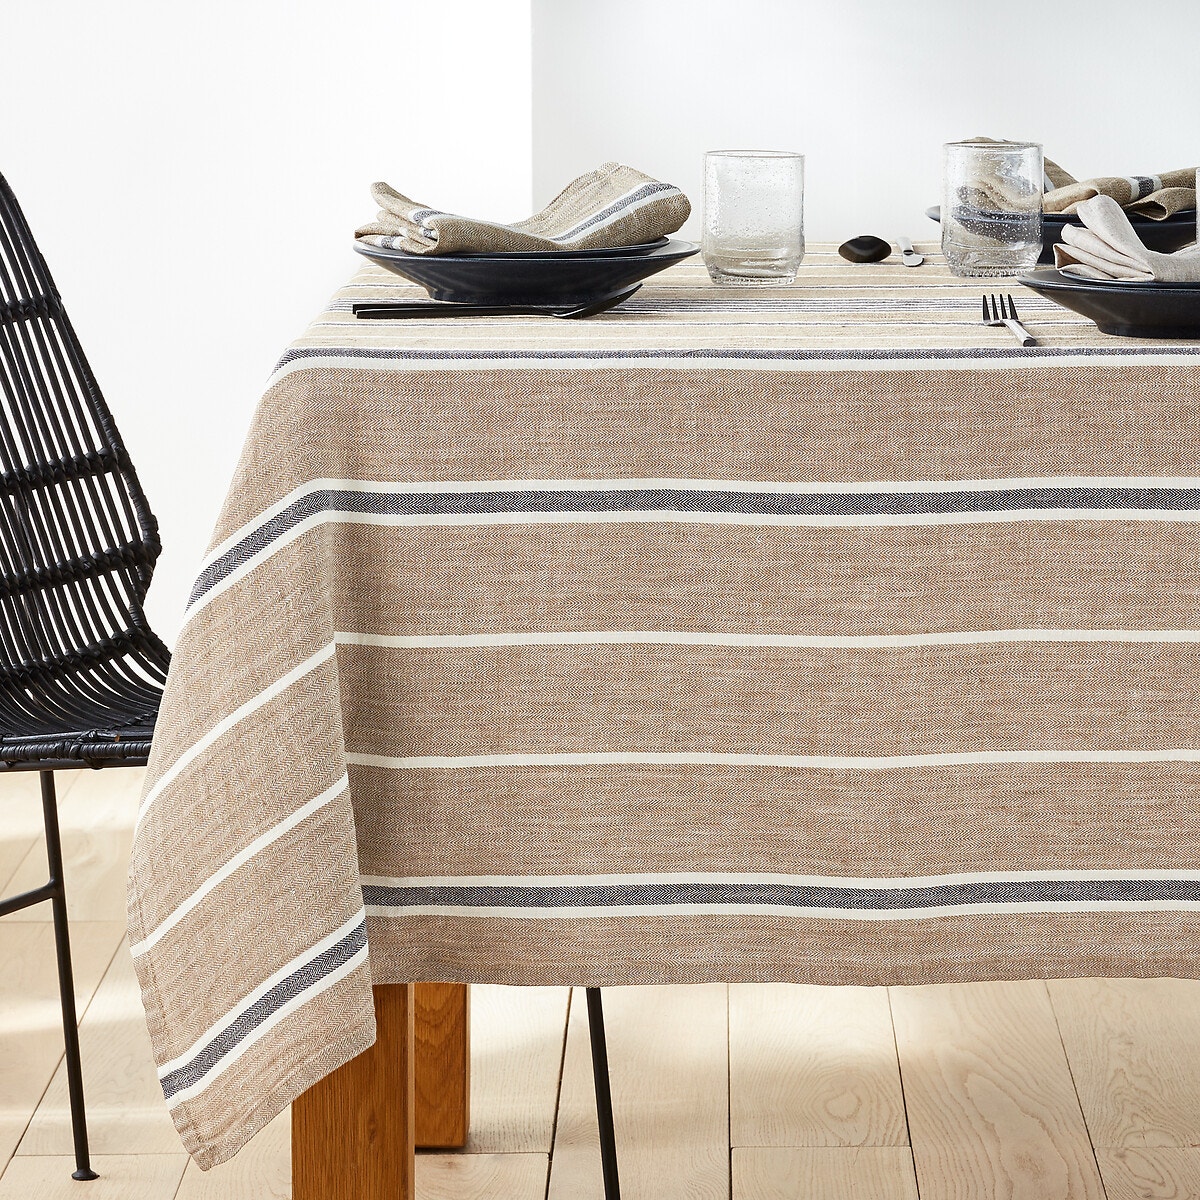 Σπίτι > Λευκά είδη > Κουζίνα > Τραπεζομάντηλα Getaria Striped 100% Linen Tablecloth 150x150 cm